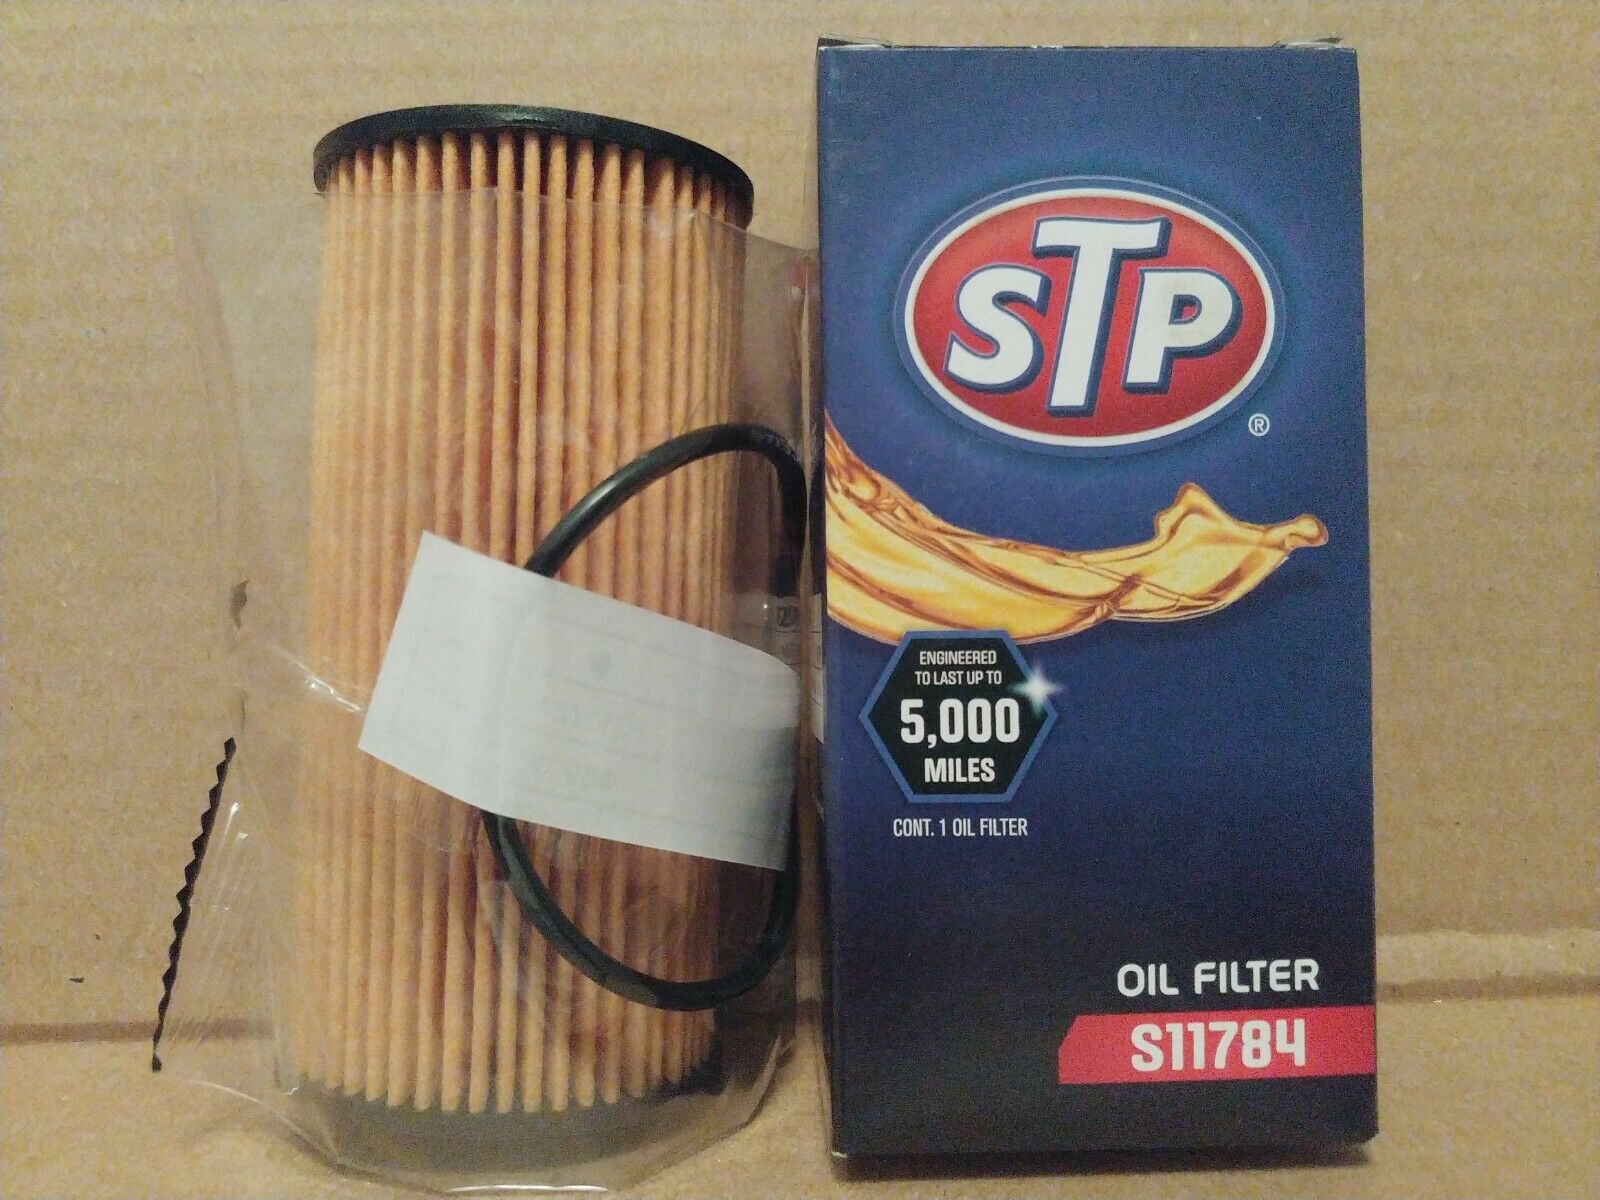 STP S11784 OIL FILTER